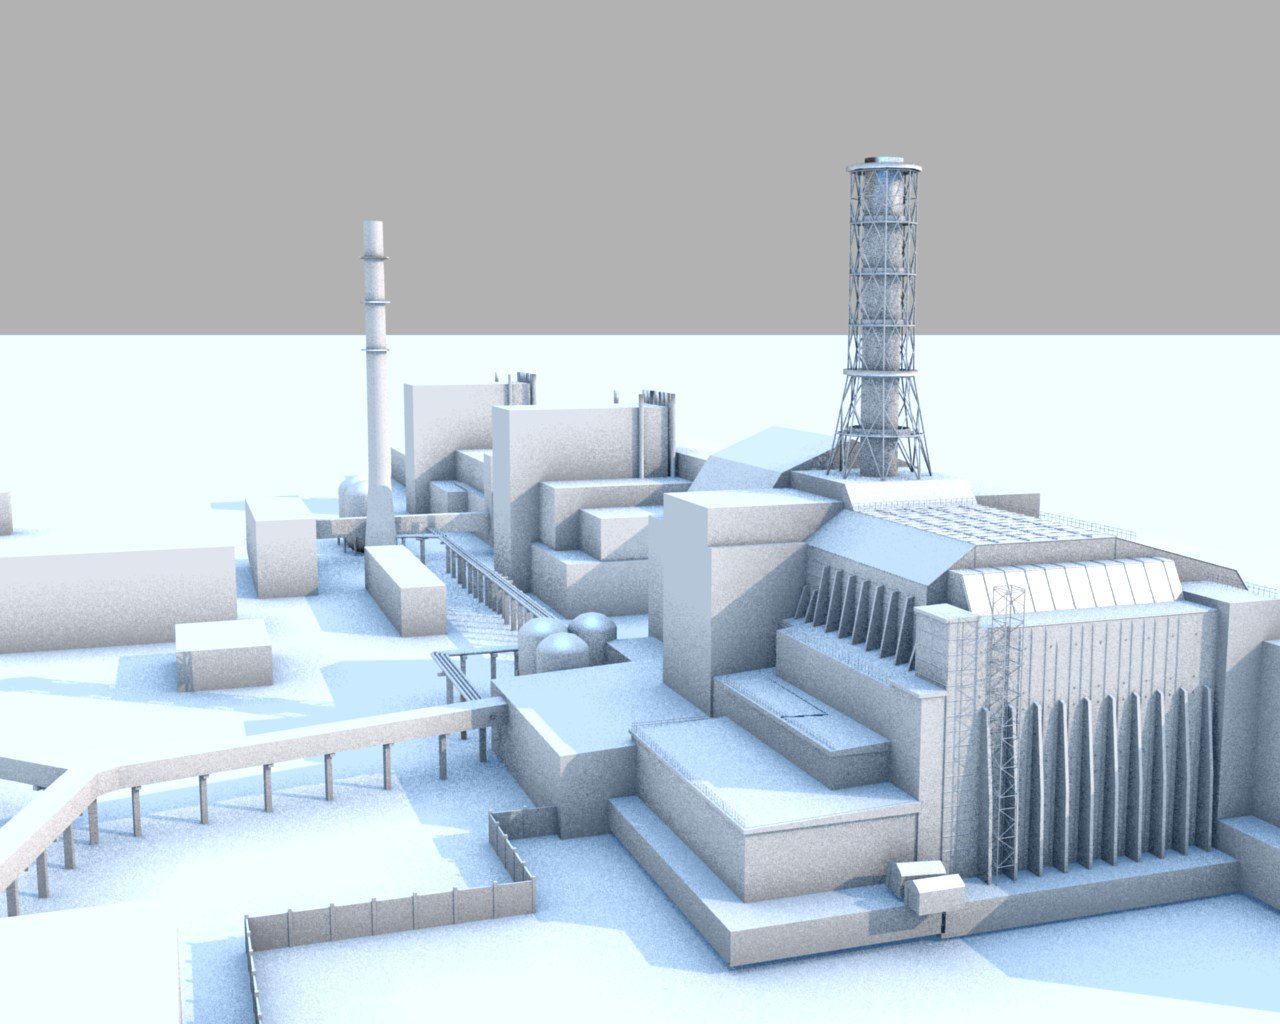 Аэс 3 энергоблок. Чернобыль атомная станция 4 энергоблок. РБМК-1000 Чернобыль. 3 Энергоблок ЧАЭС. РБМК-1000 3д модель.